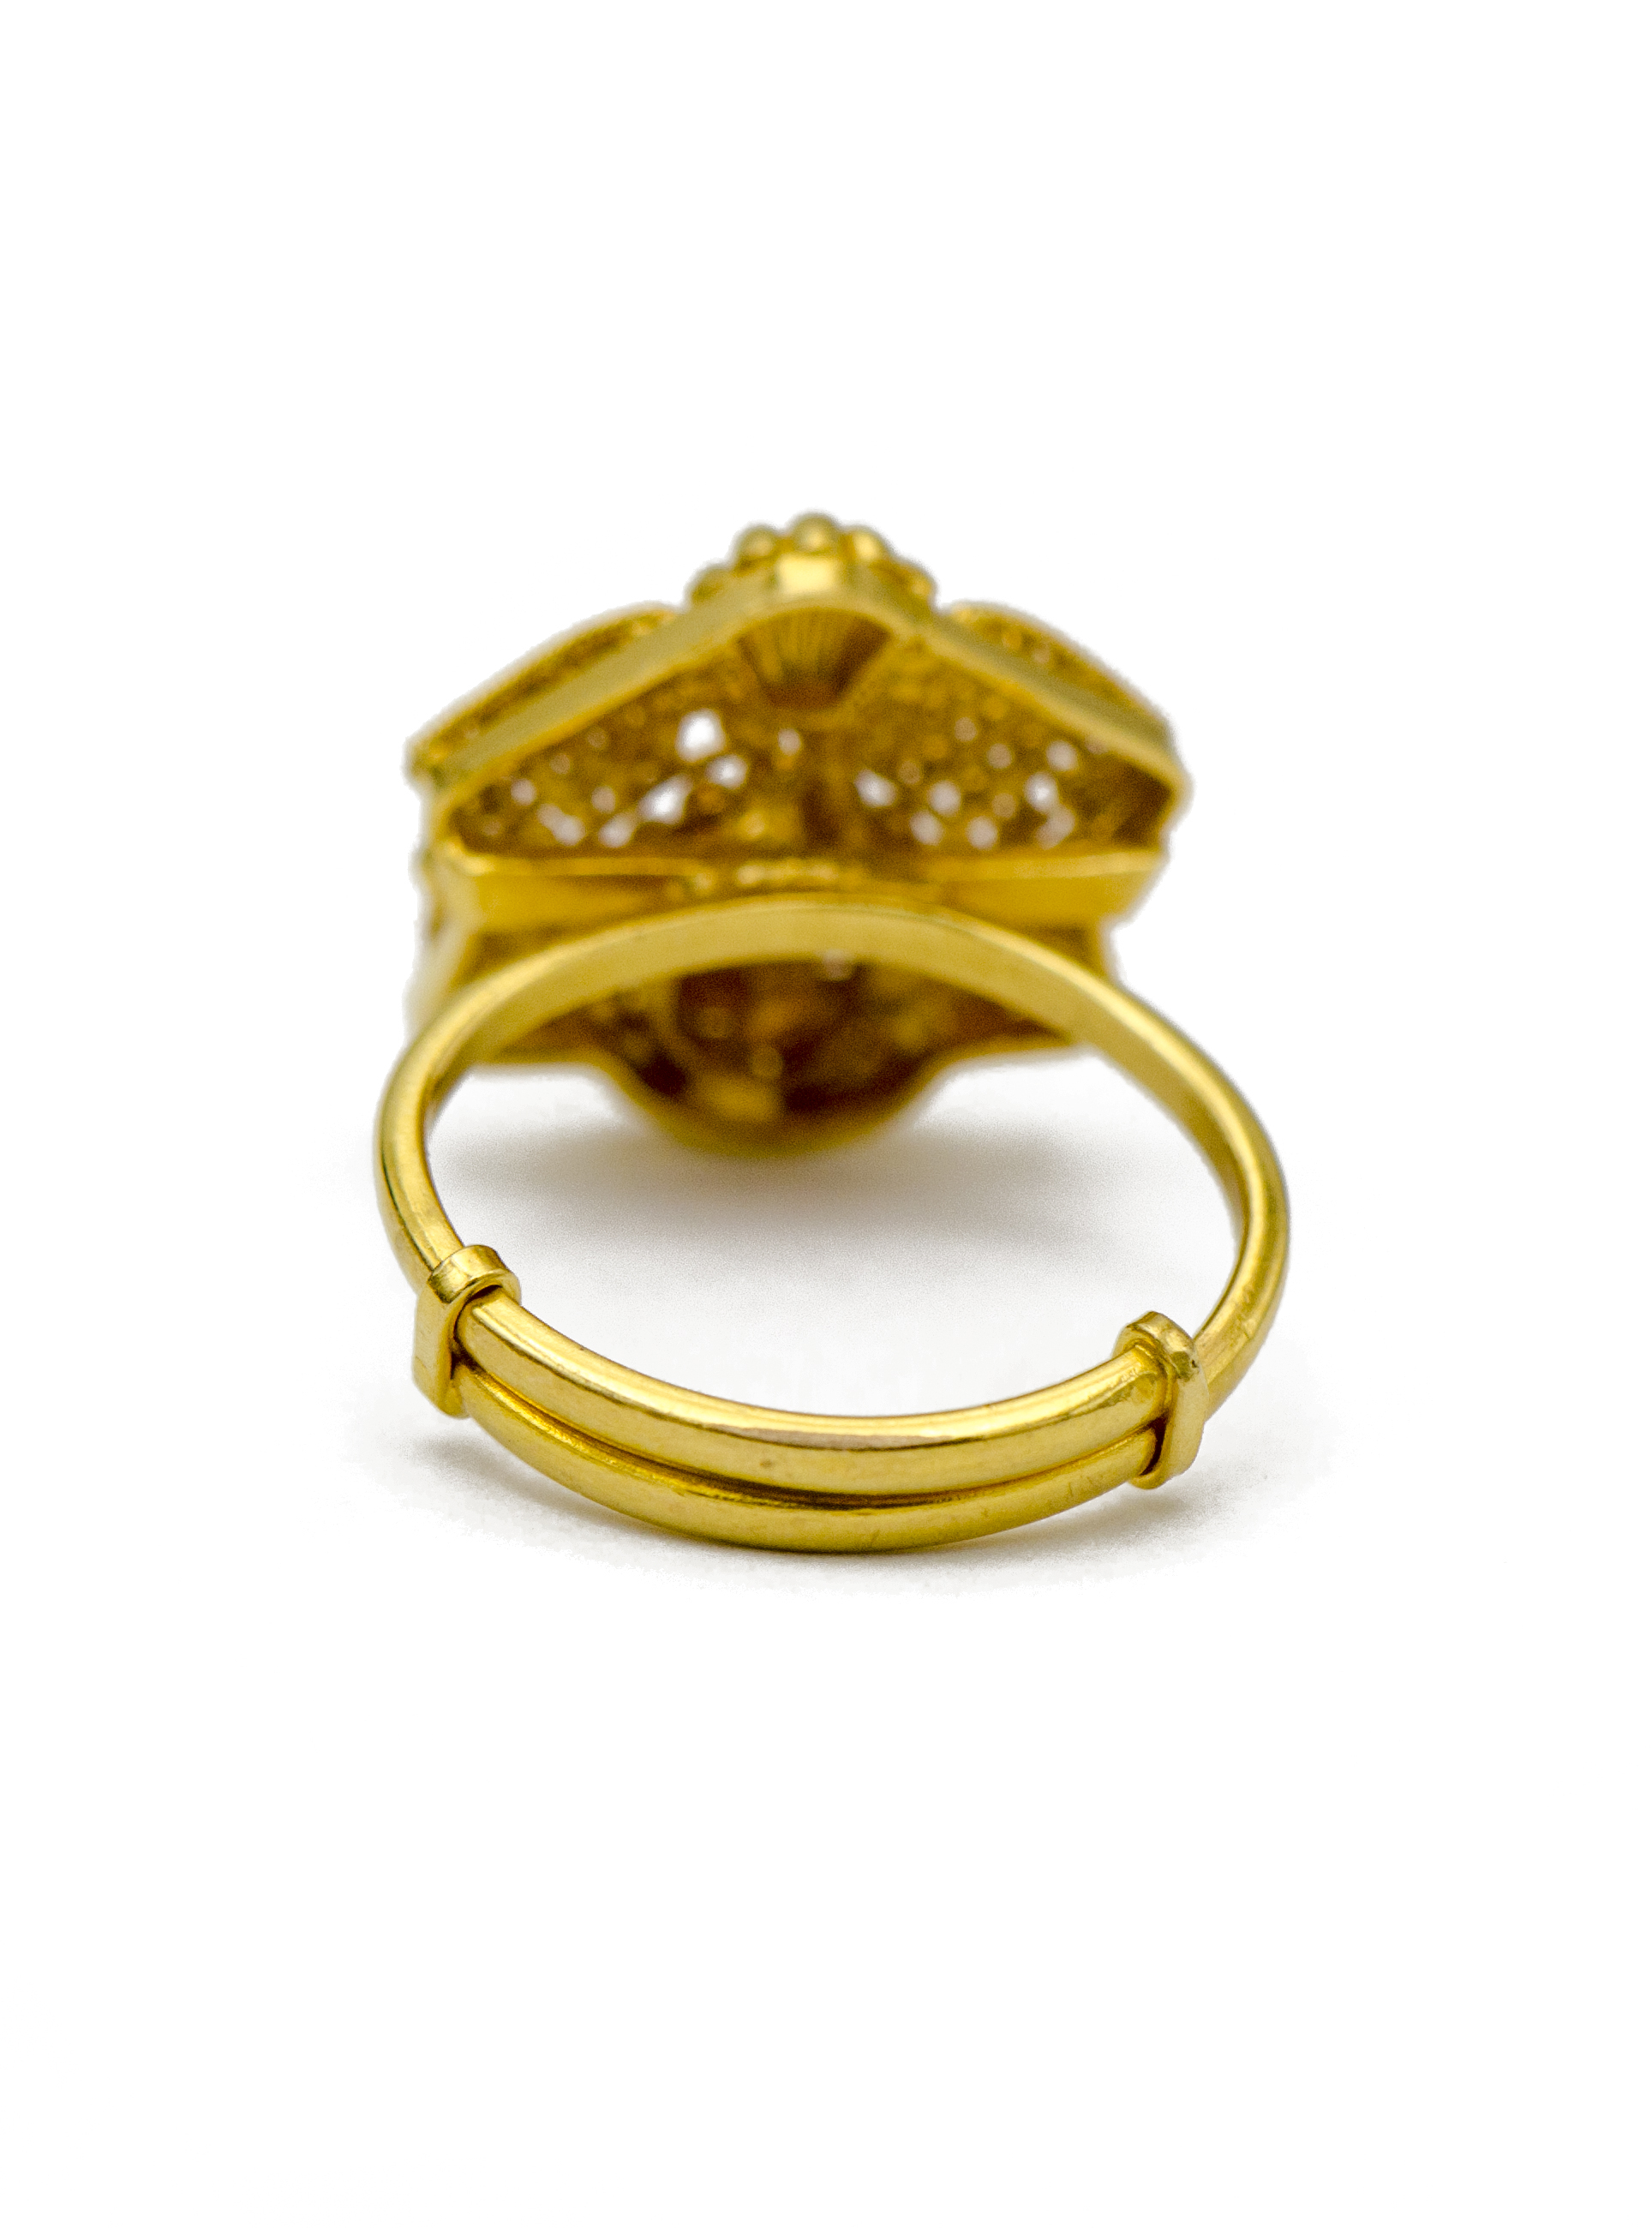 22K Gold Artisan Ring | Sandler's Diamonds & Time | Columbia SC | Mt